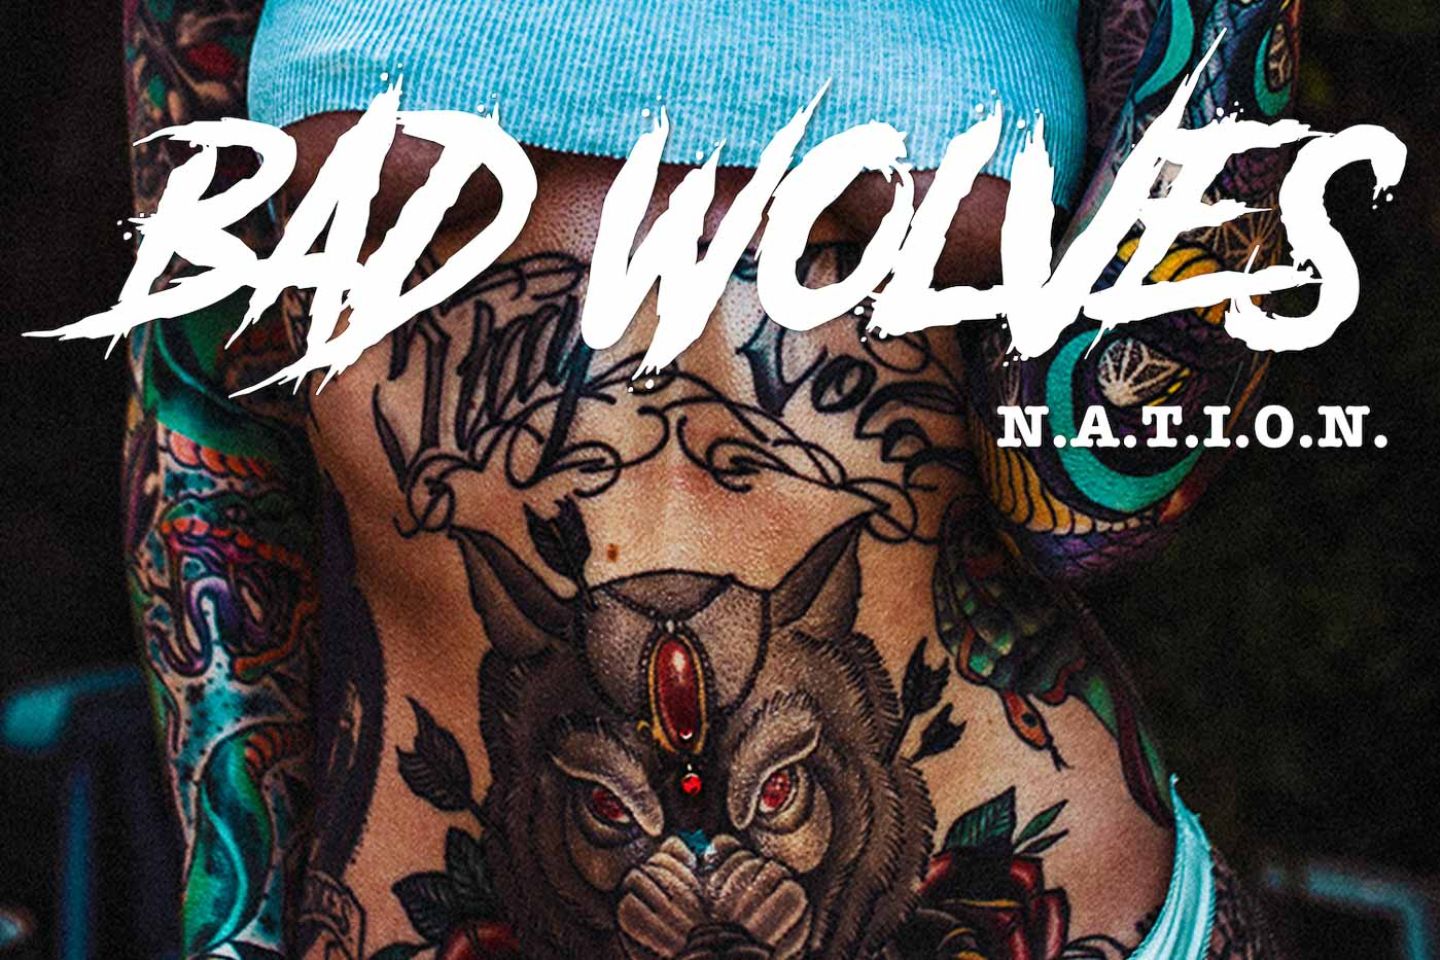 Bad Wolves “N.A.T.I.O.N.” (Eleven Seven Music, 2019)